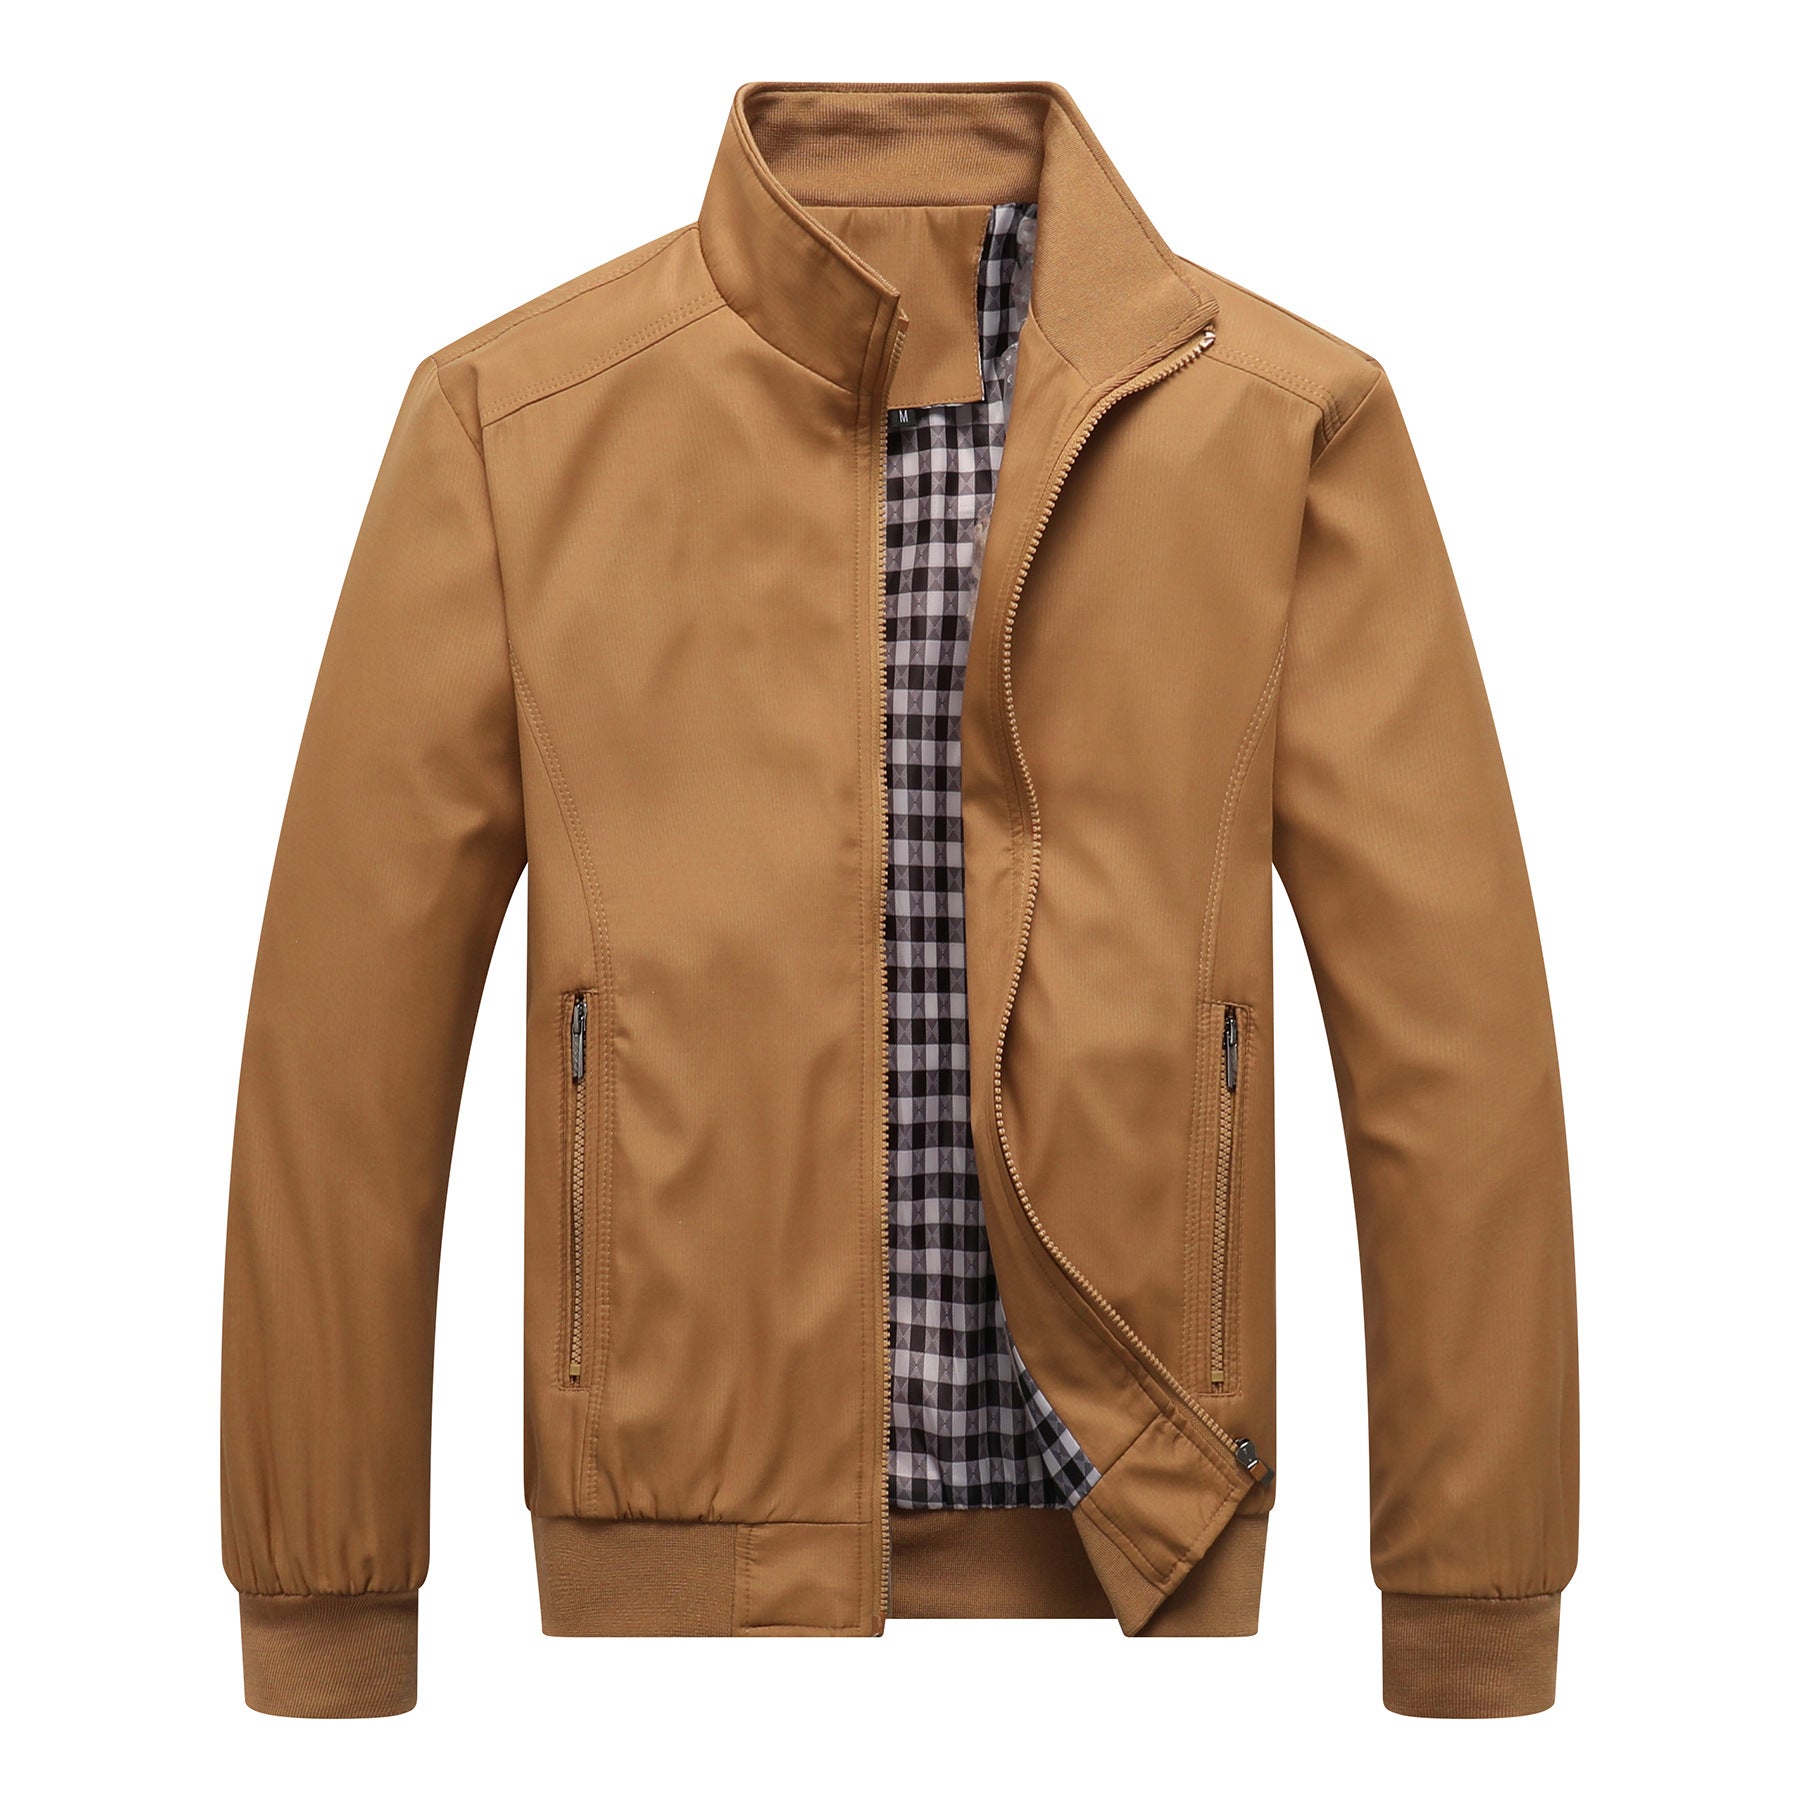 Men's jacket spring casual men's zip coat